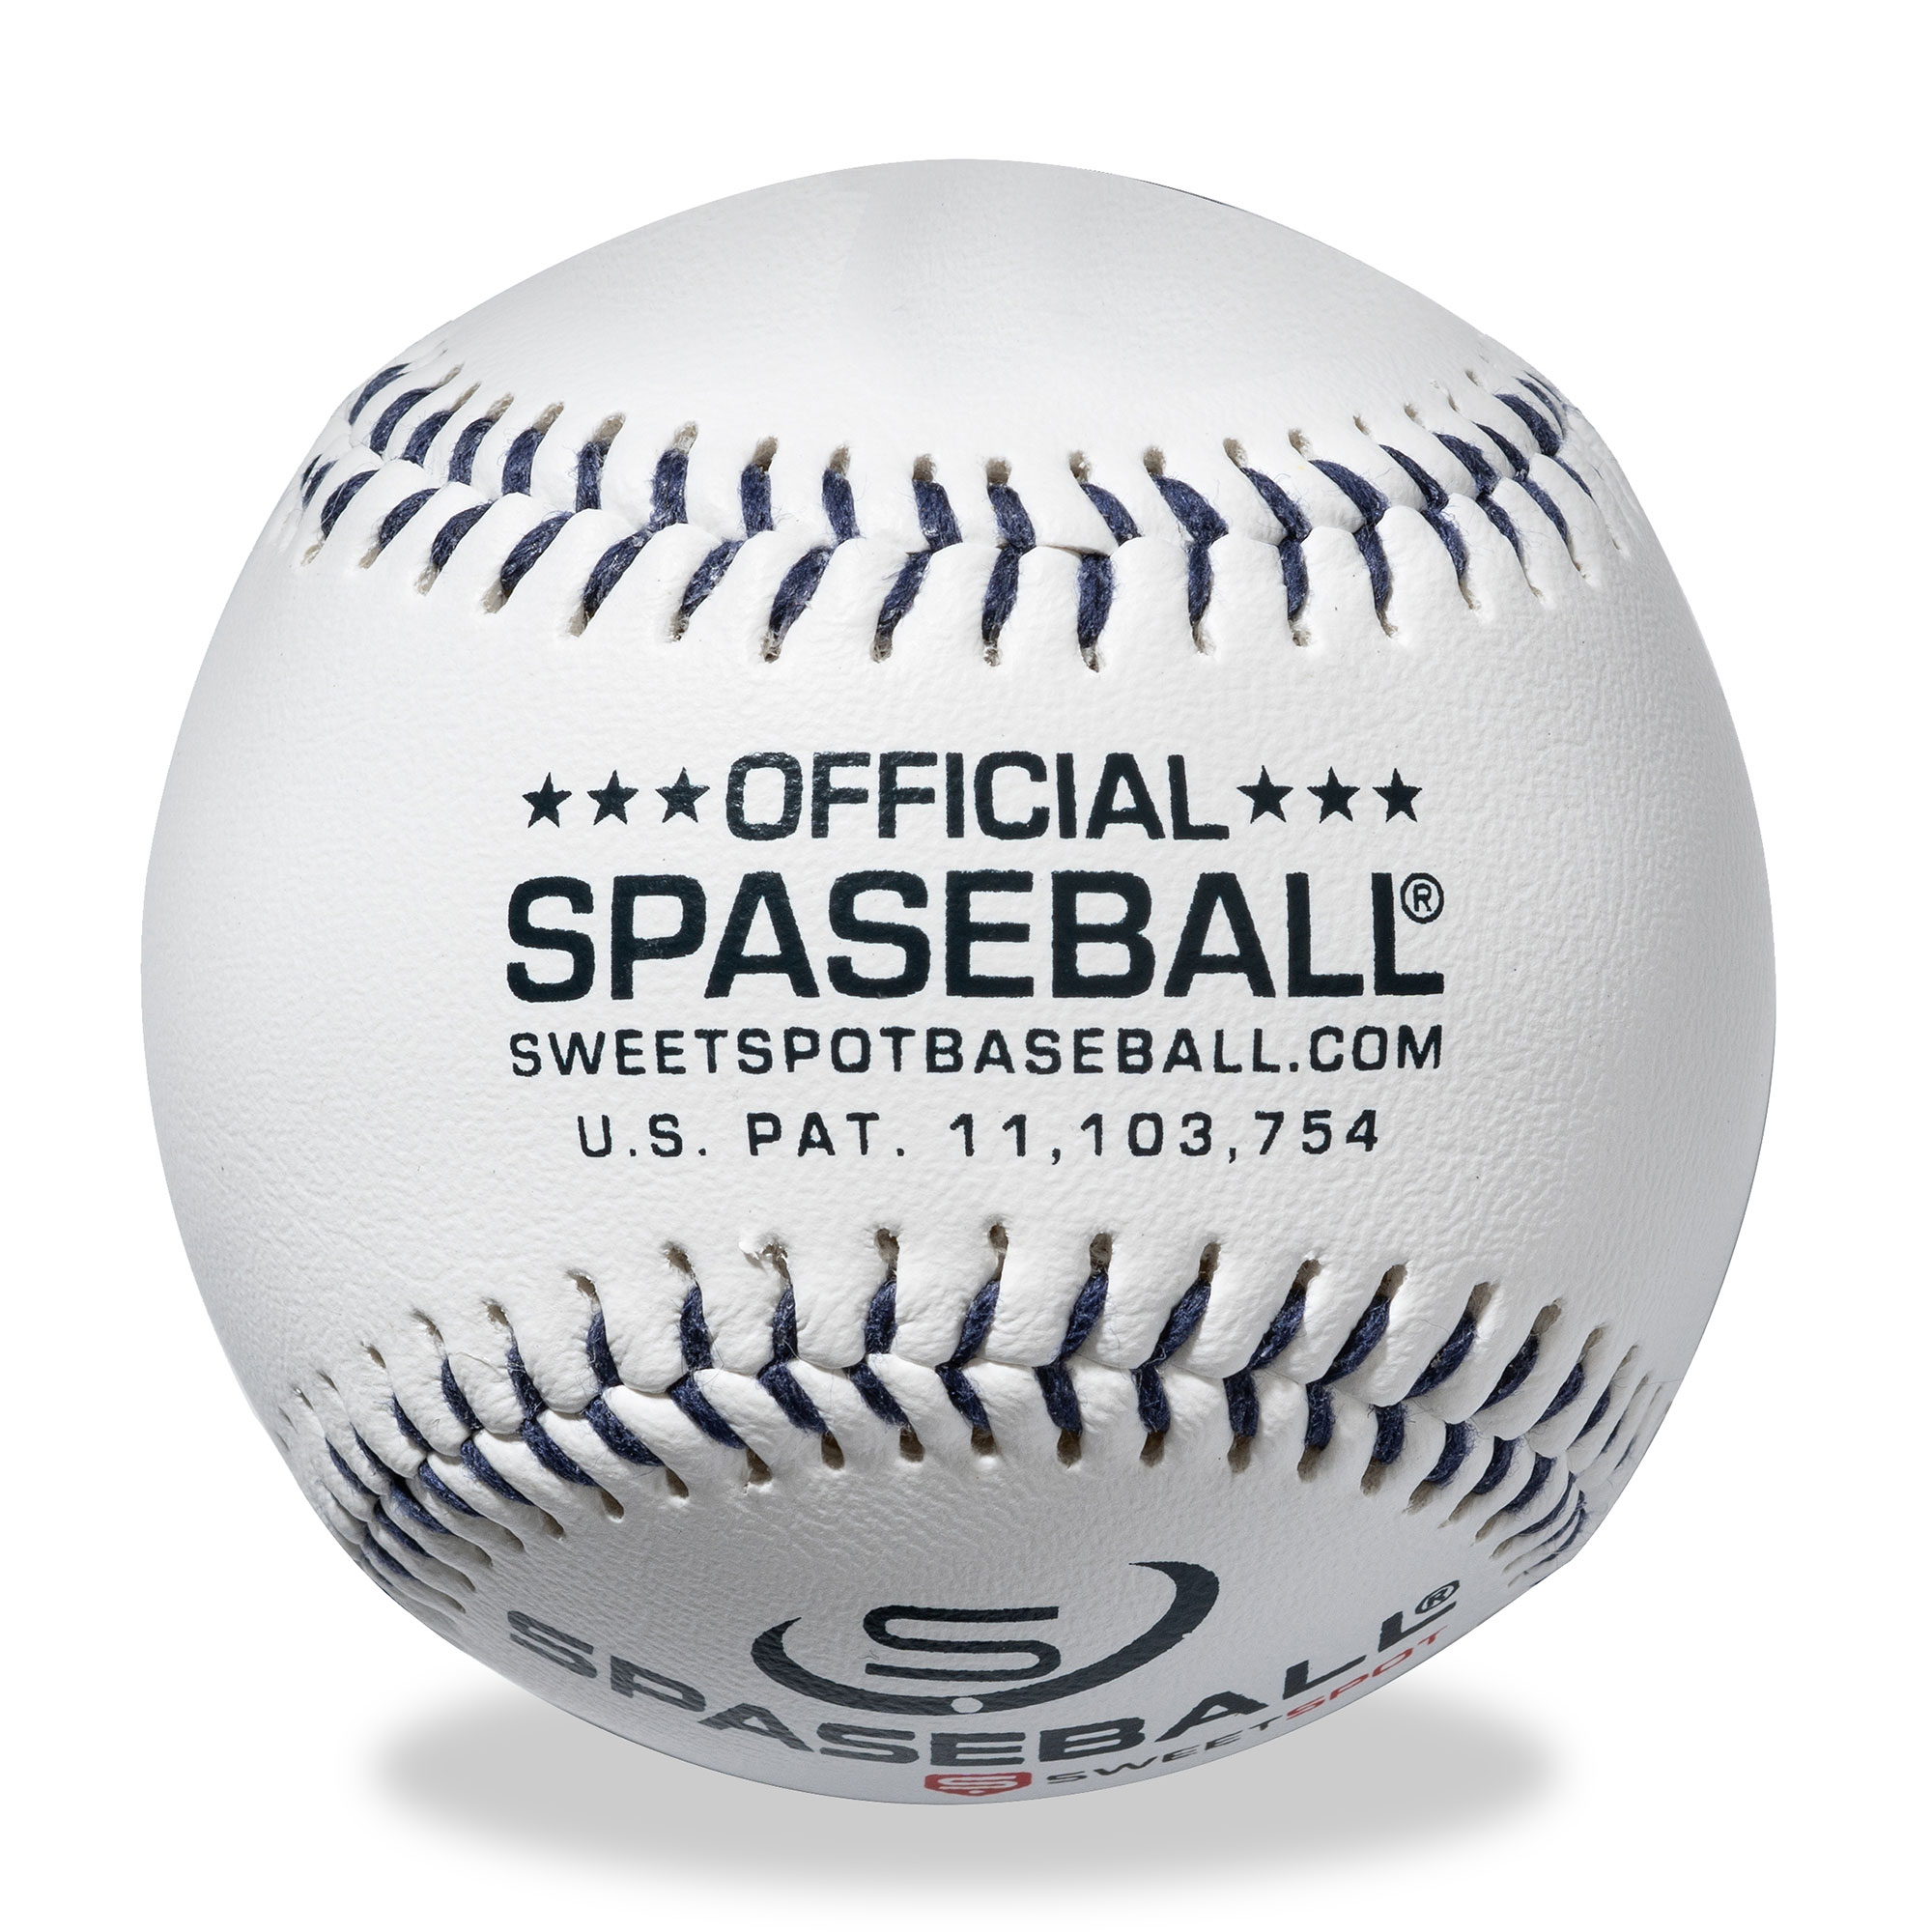 SweetSpot Baseball Miami Marlins Spaseball 2-Pack - image 5 of 5